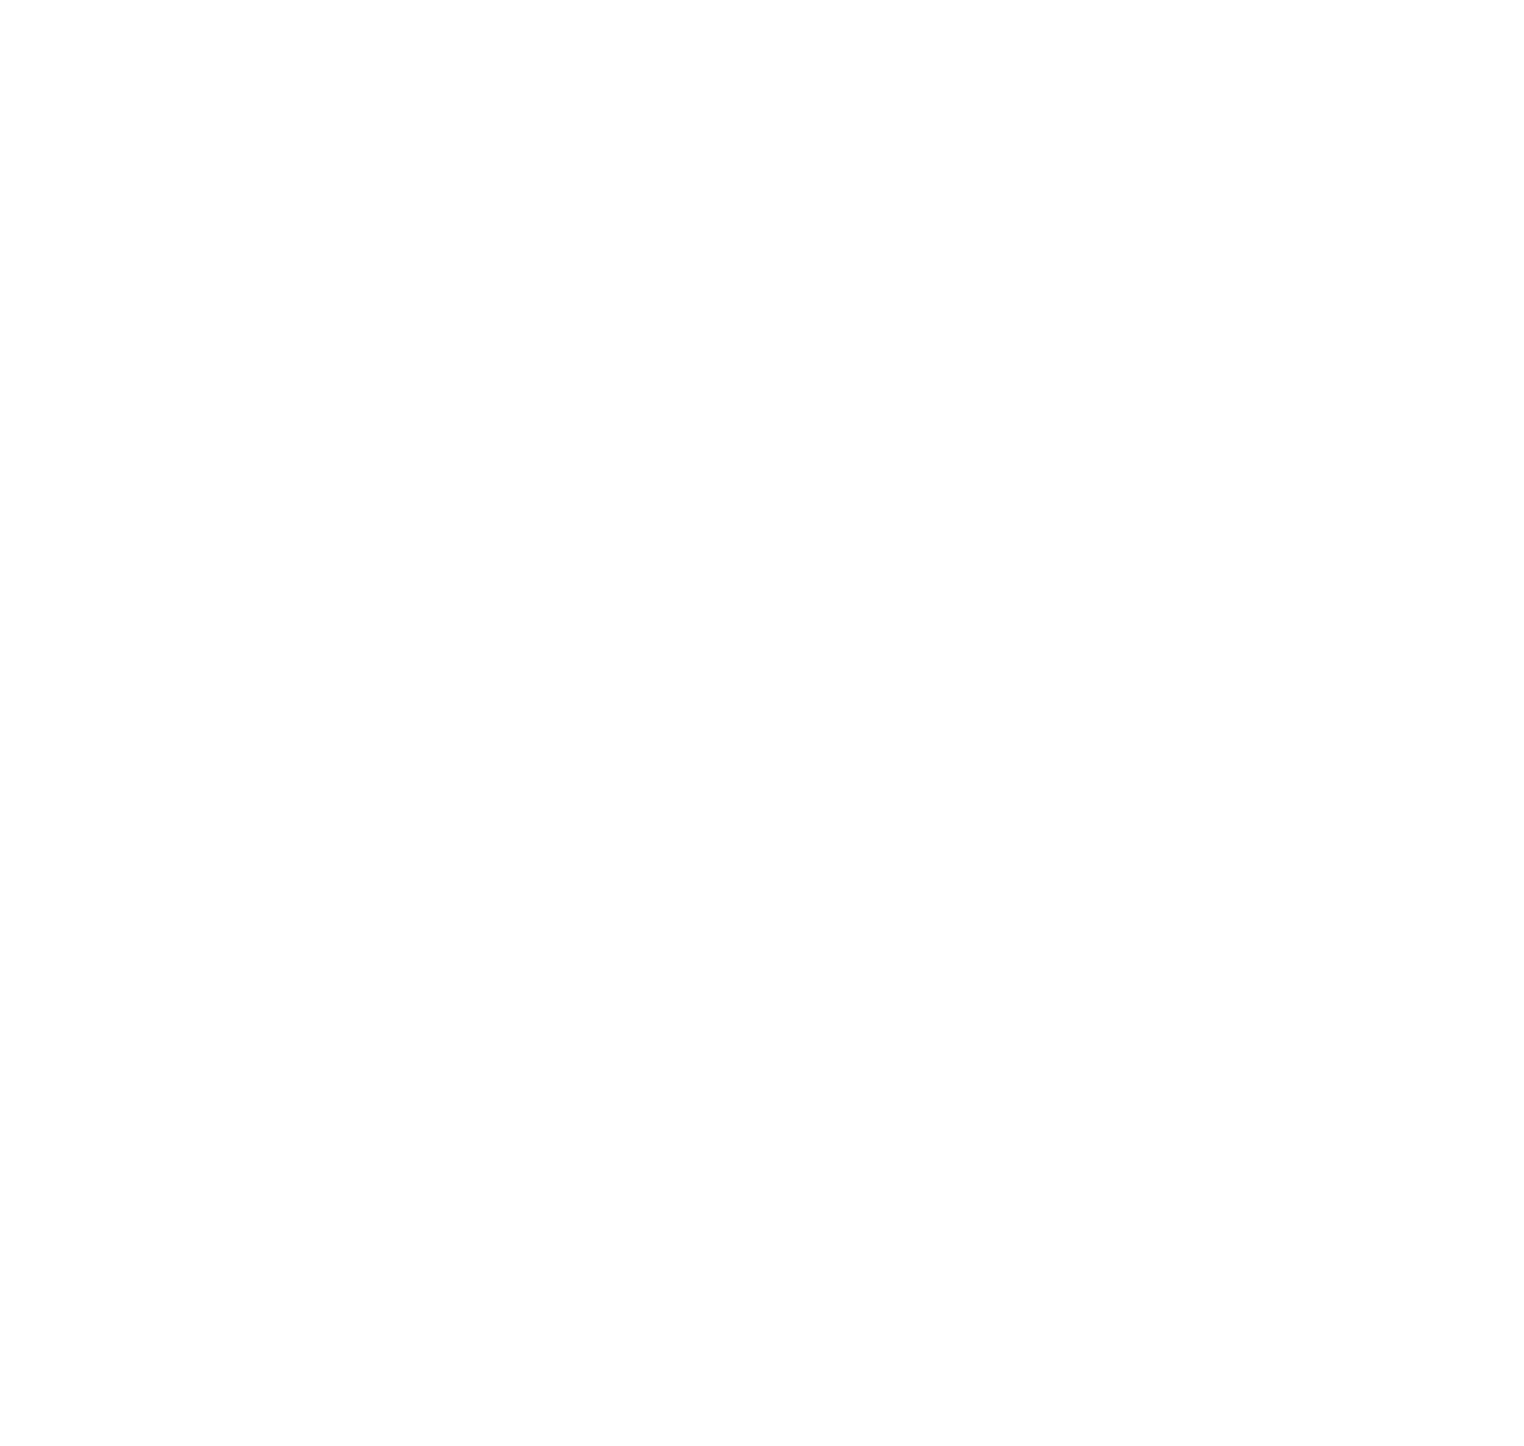 DATAGROUP SE logo for dark backgrounds (transparent PNG)